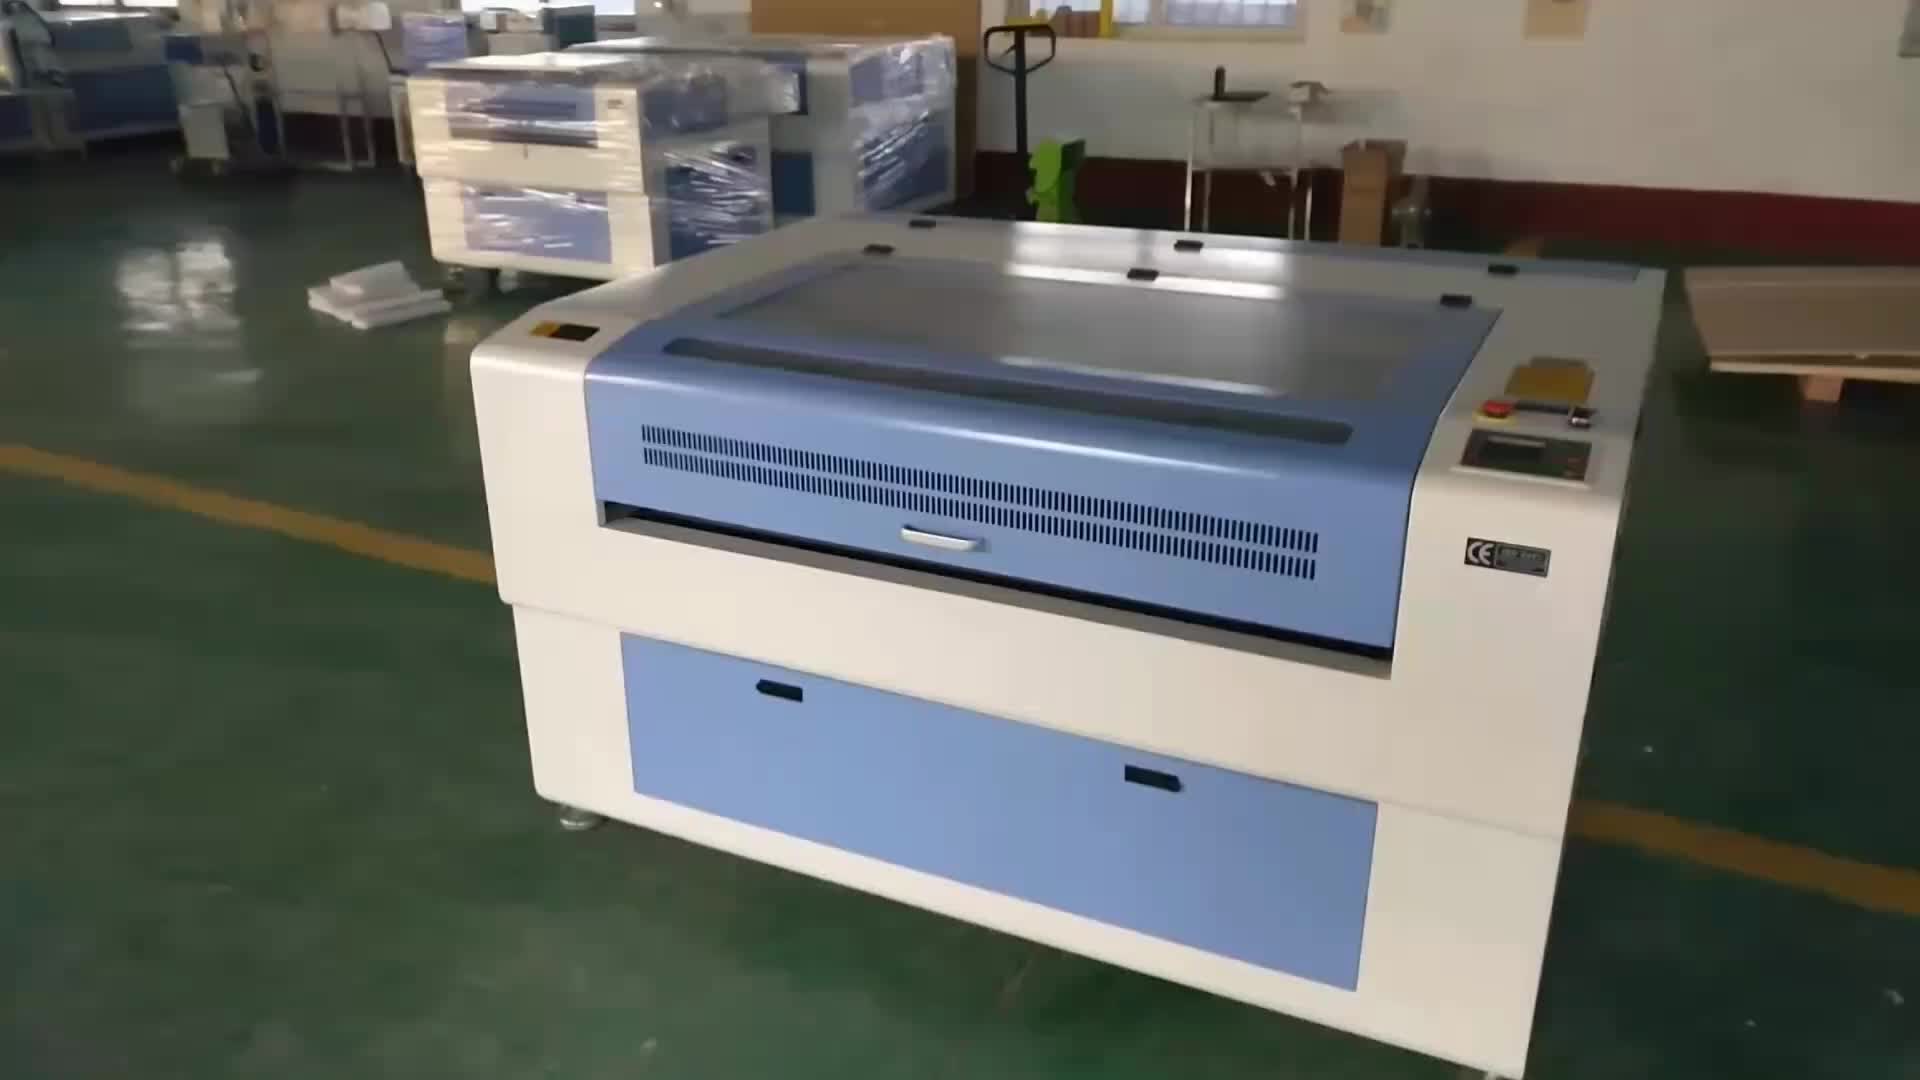 cricut printable vinyl laser printer crickets printable vinyl laser